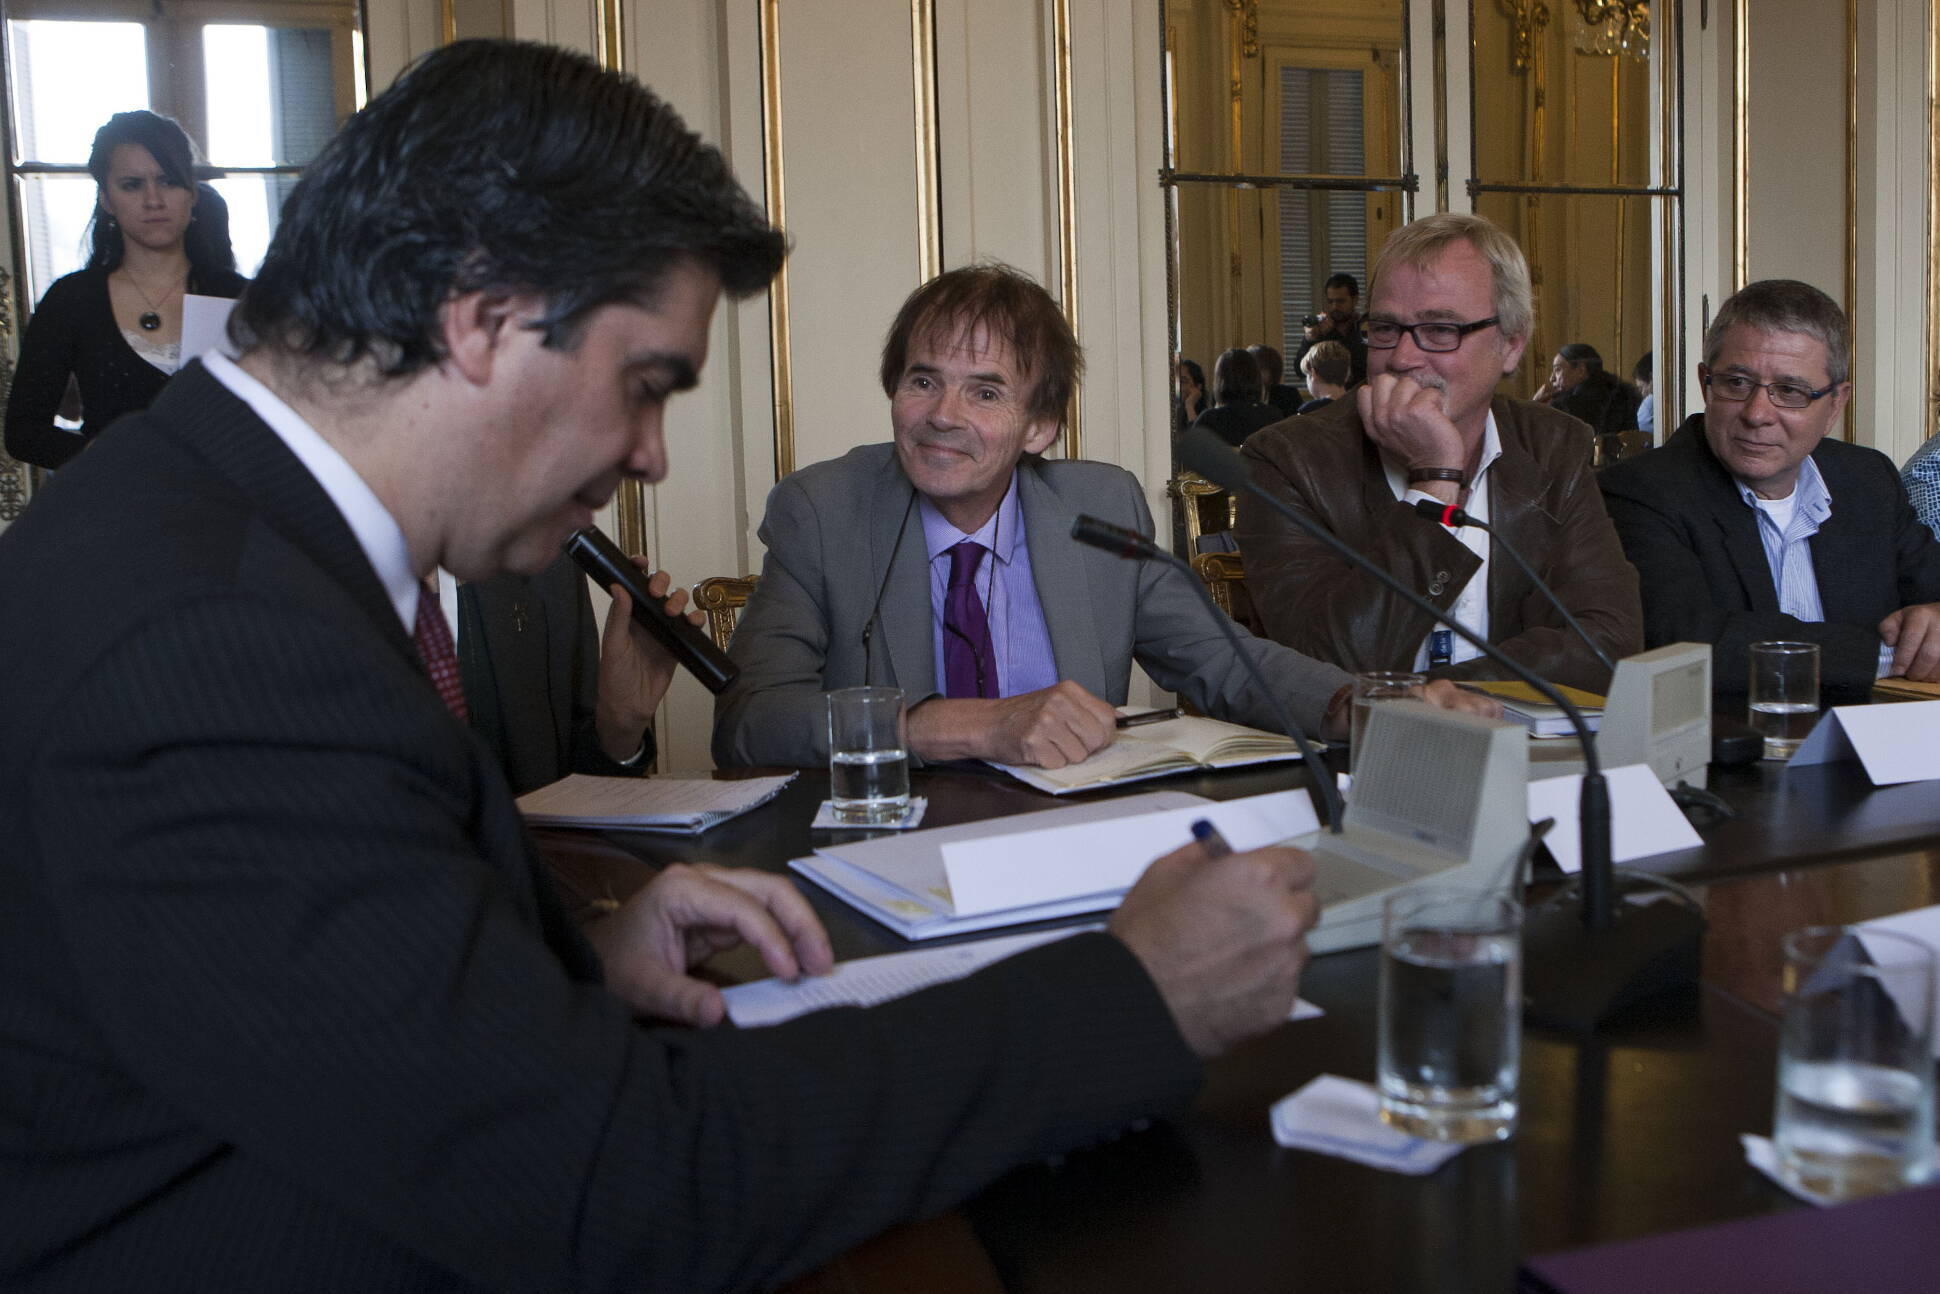 El jefe de Gabinete se reunió con referentes de la Internacional de la Educación, en Casa Rosada